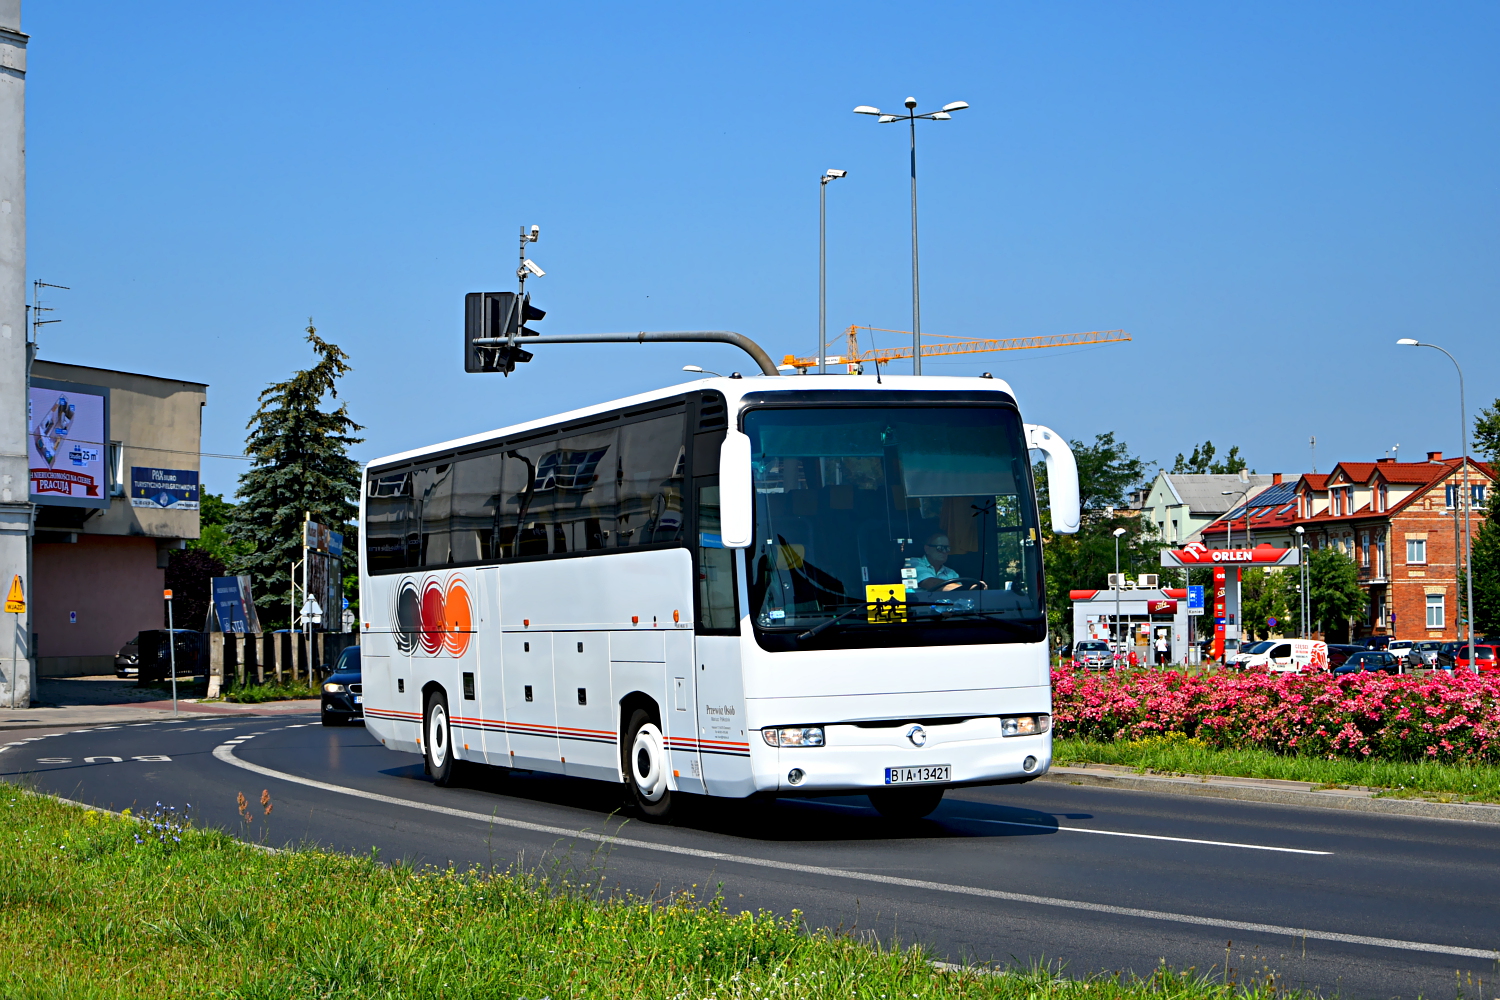 Irisbus Iliade RTX #BIA 13421